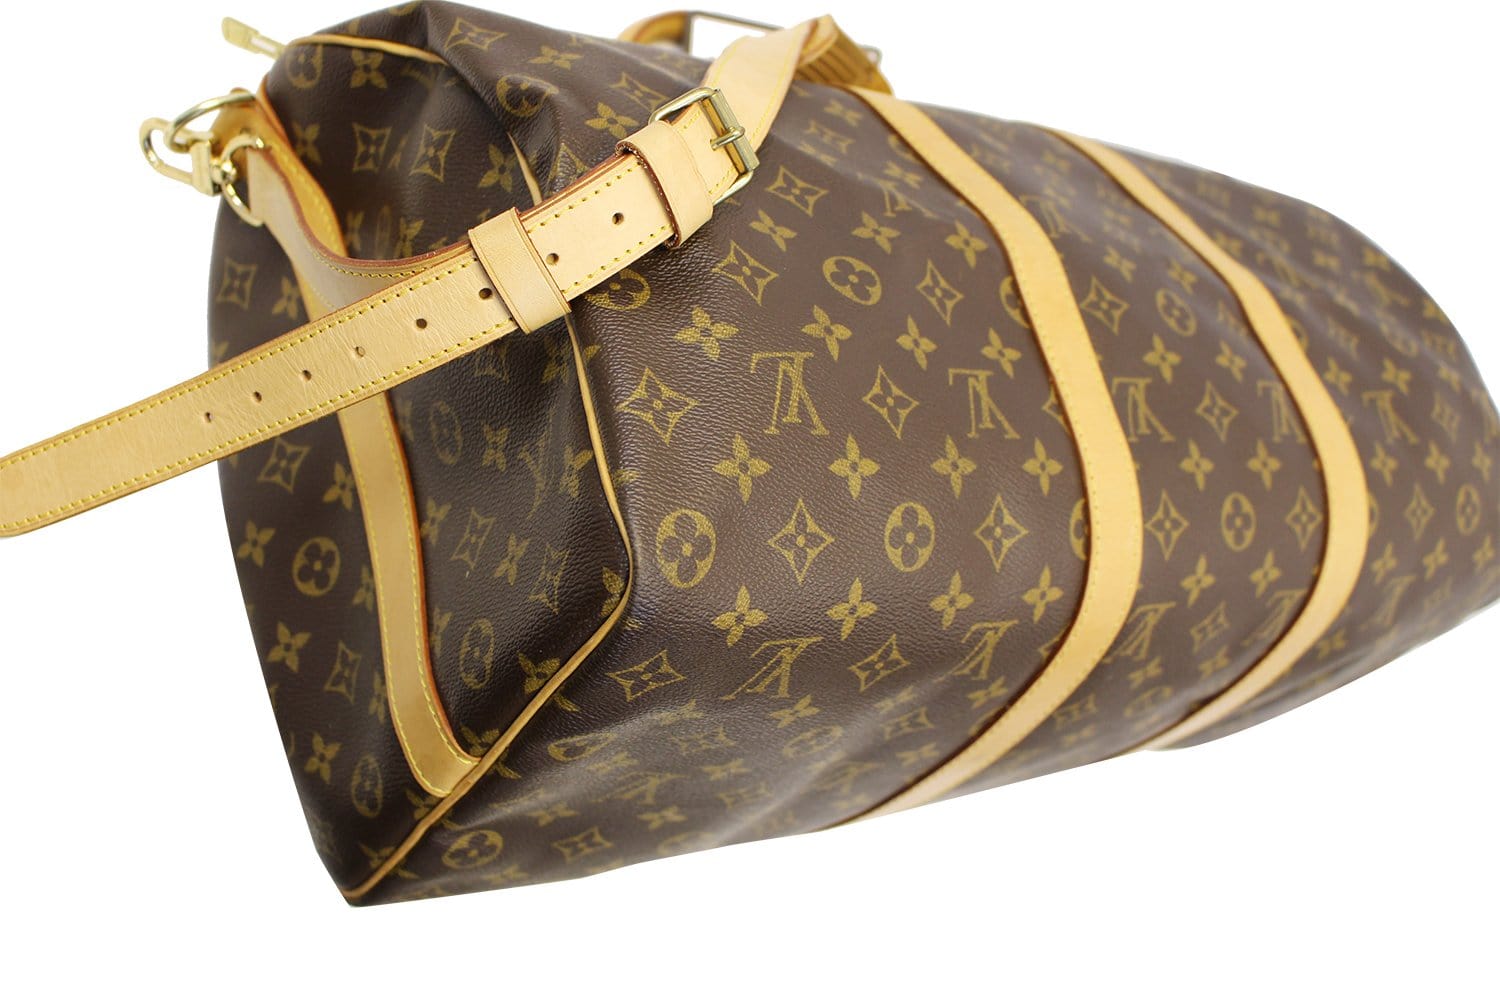 Louis Vuitton Keepall Bandouliere 50 Summer Trunks Monogram Weekend Travel  Bag